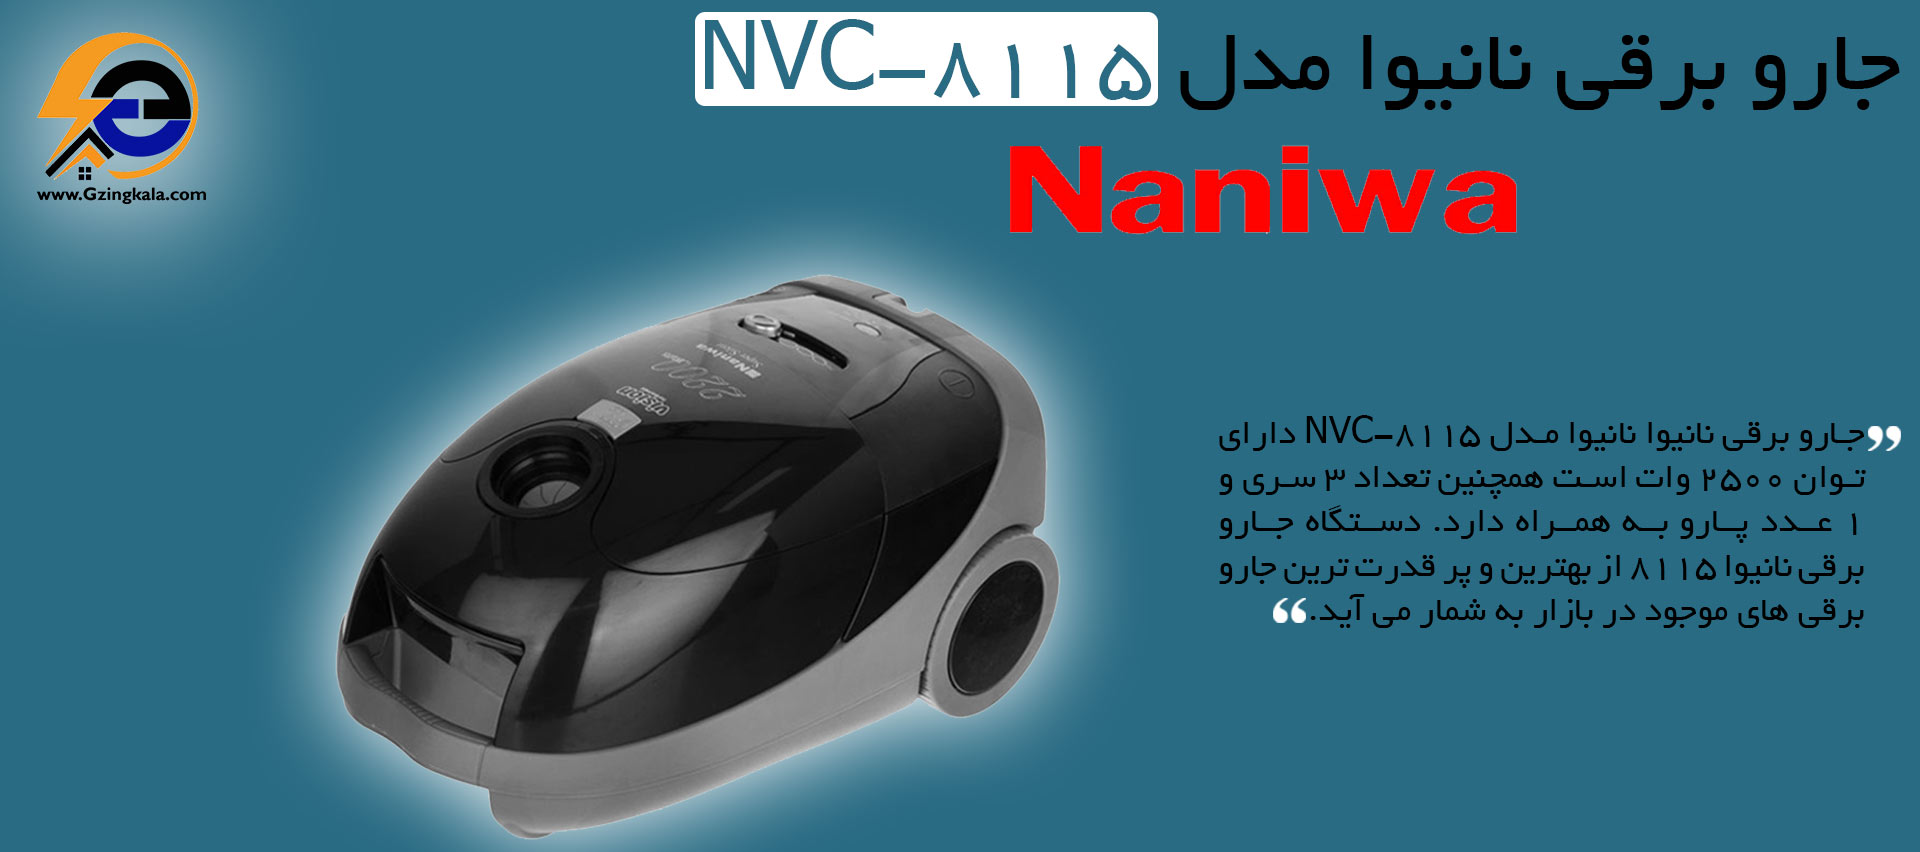 جارو برقی نانیوا مدل NVC-8115